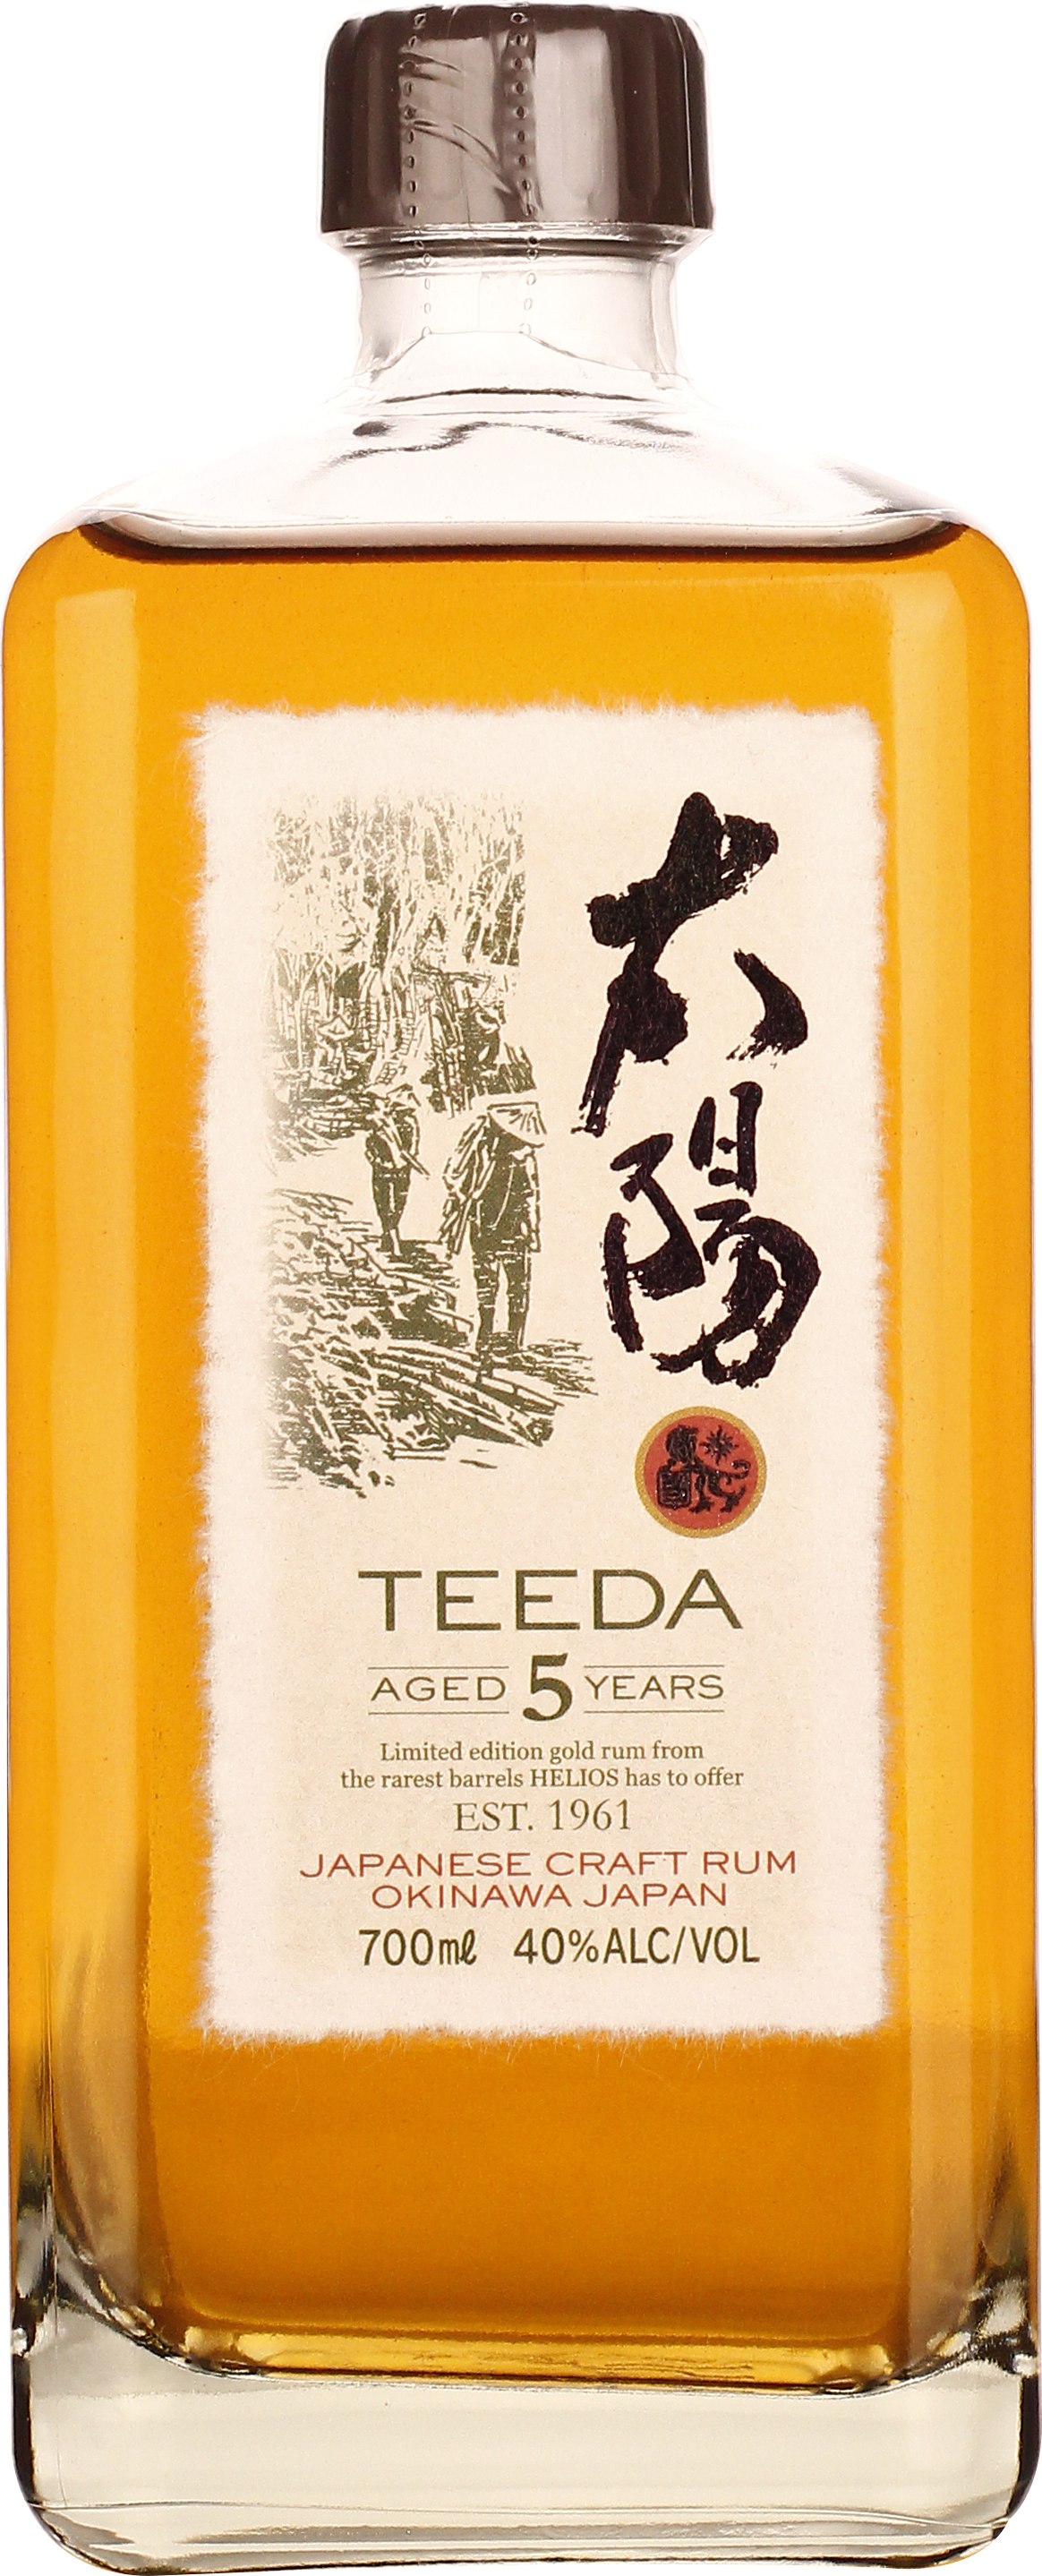 Drankdozijn Teeda 5 years Japanese Craft rum 70CL aanbieding